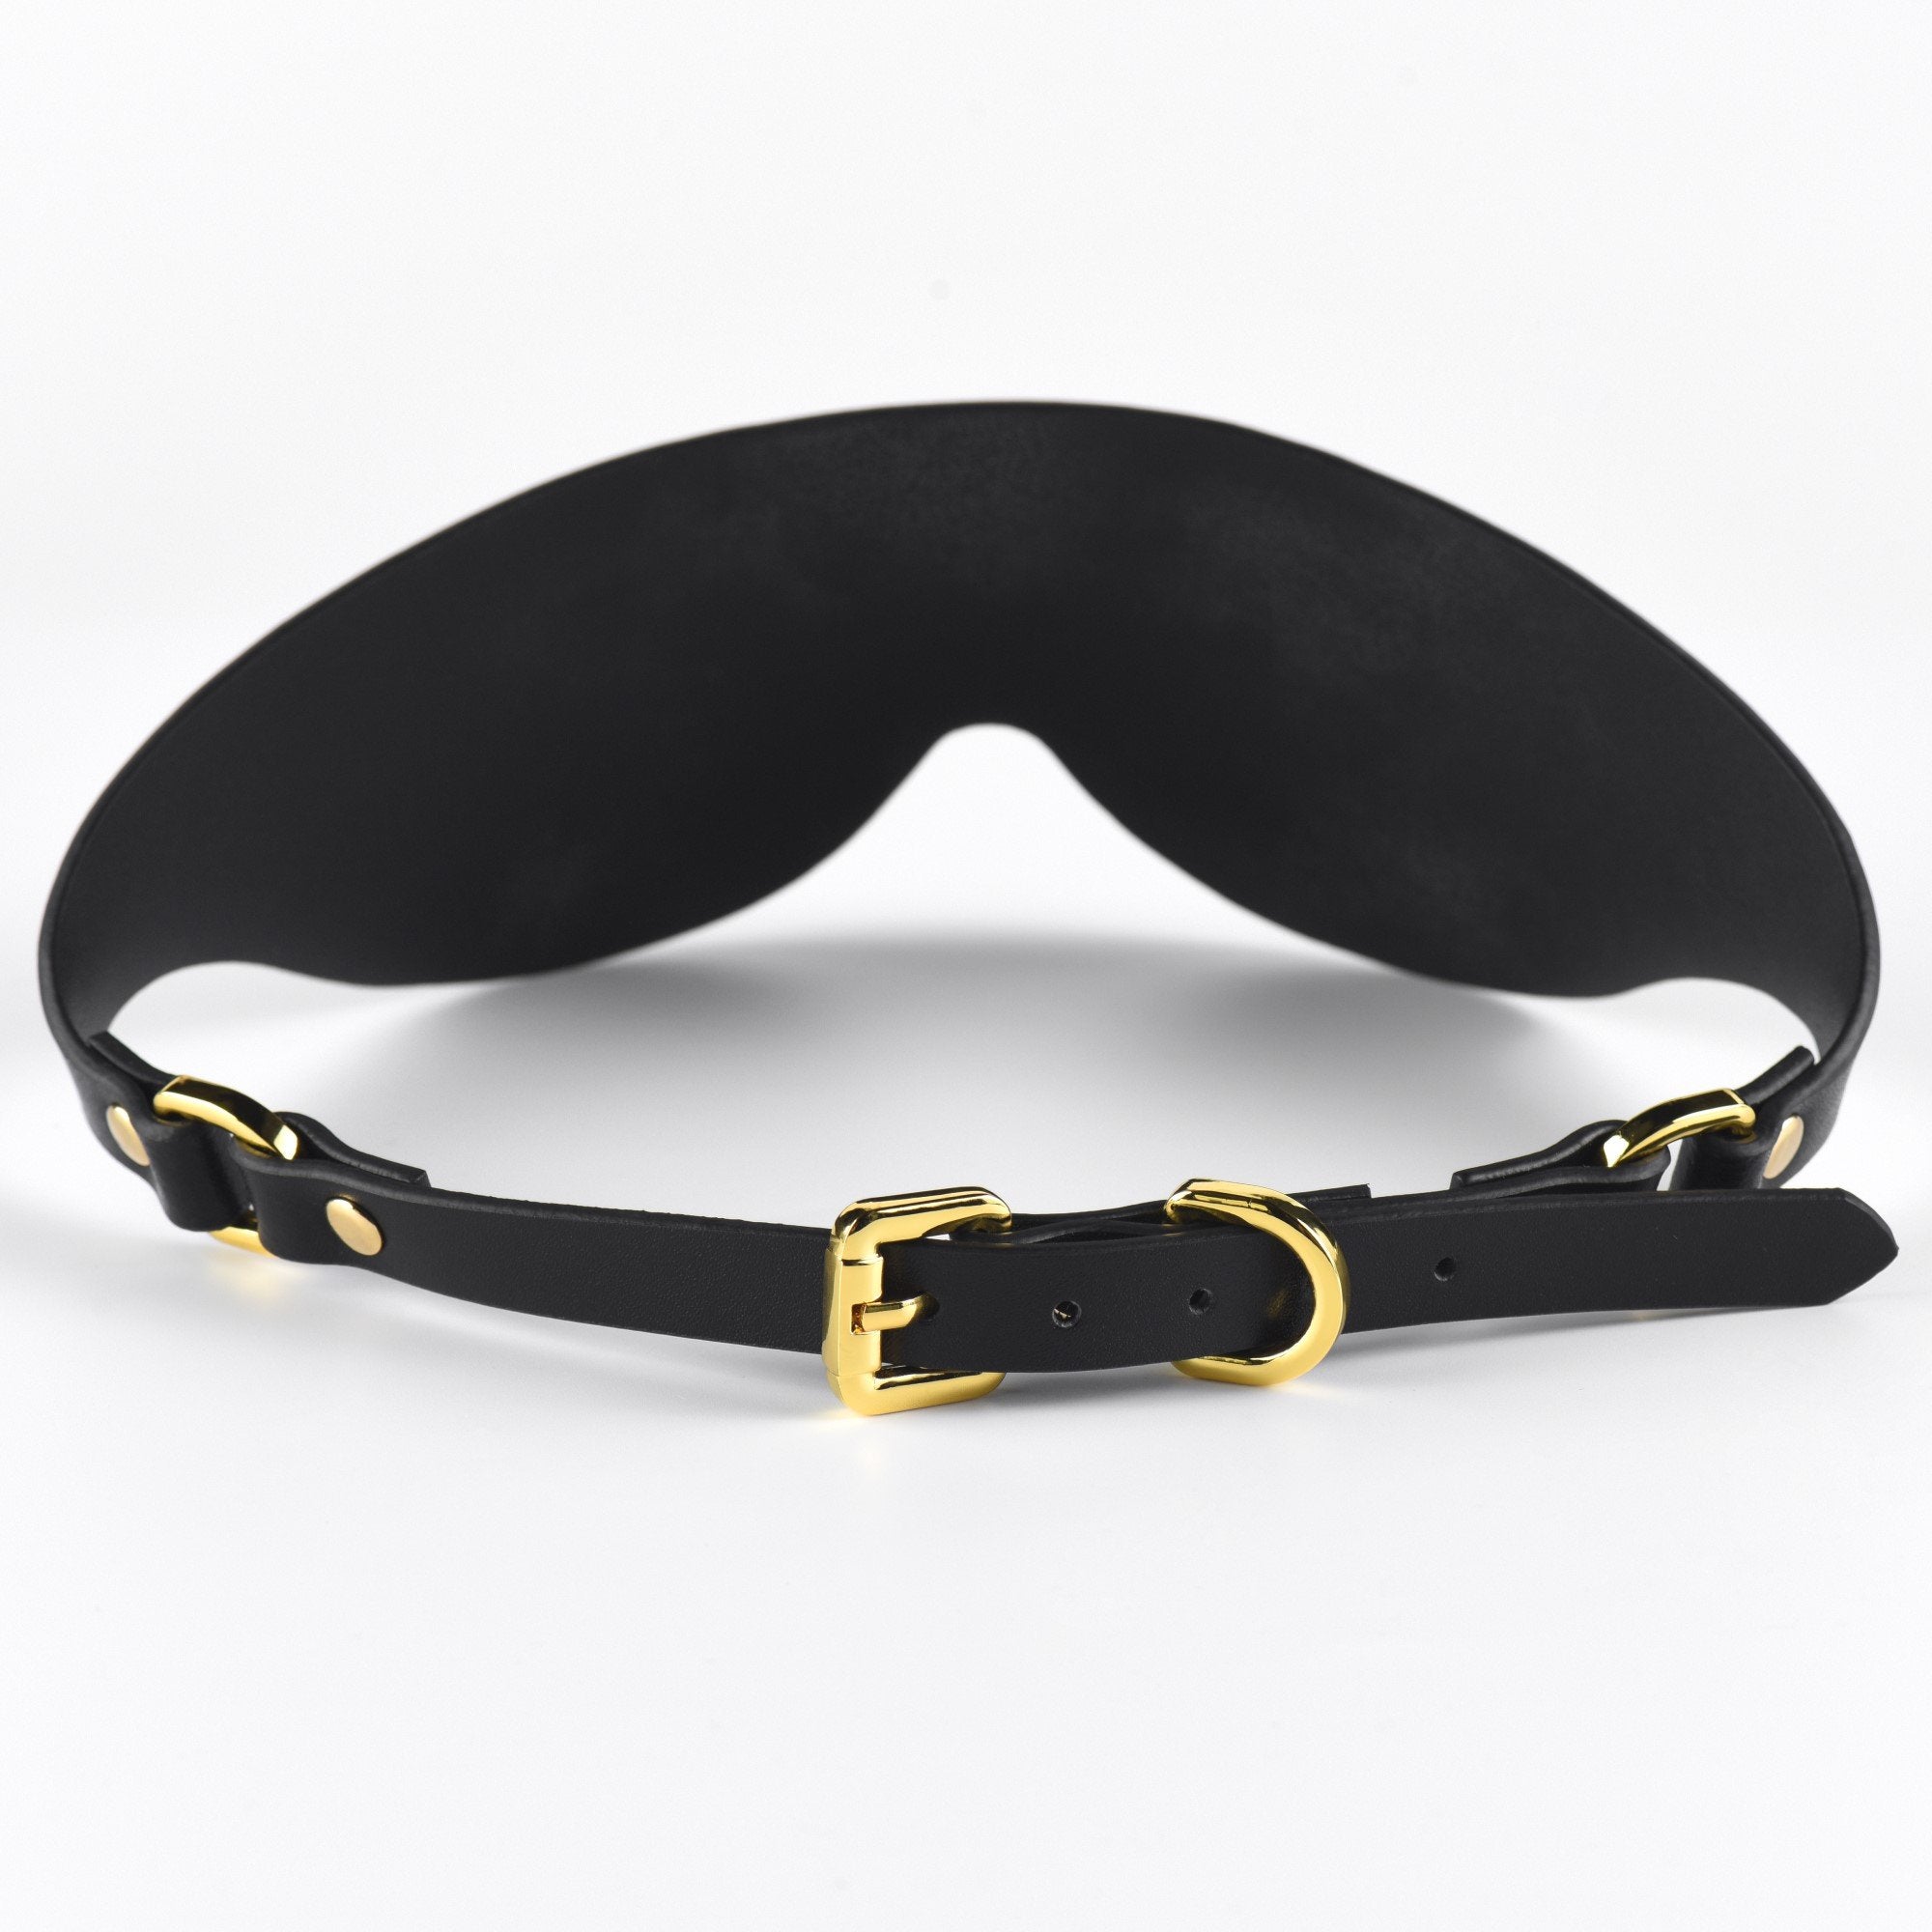 Luxury Italian Leather Blindfolds by UPKO